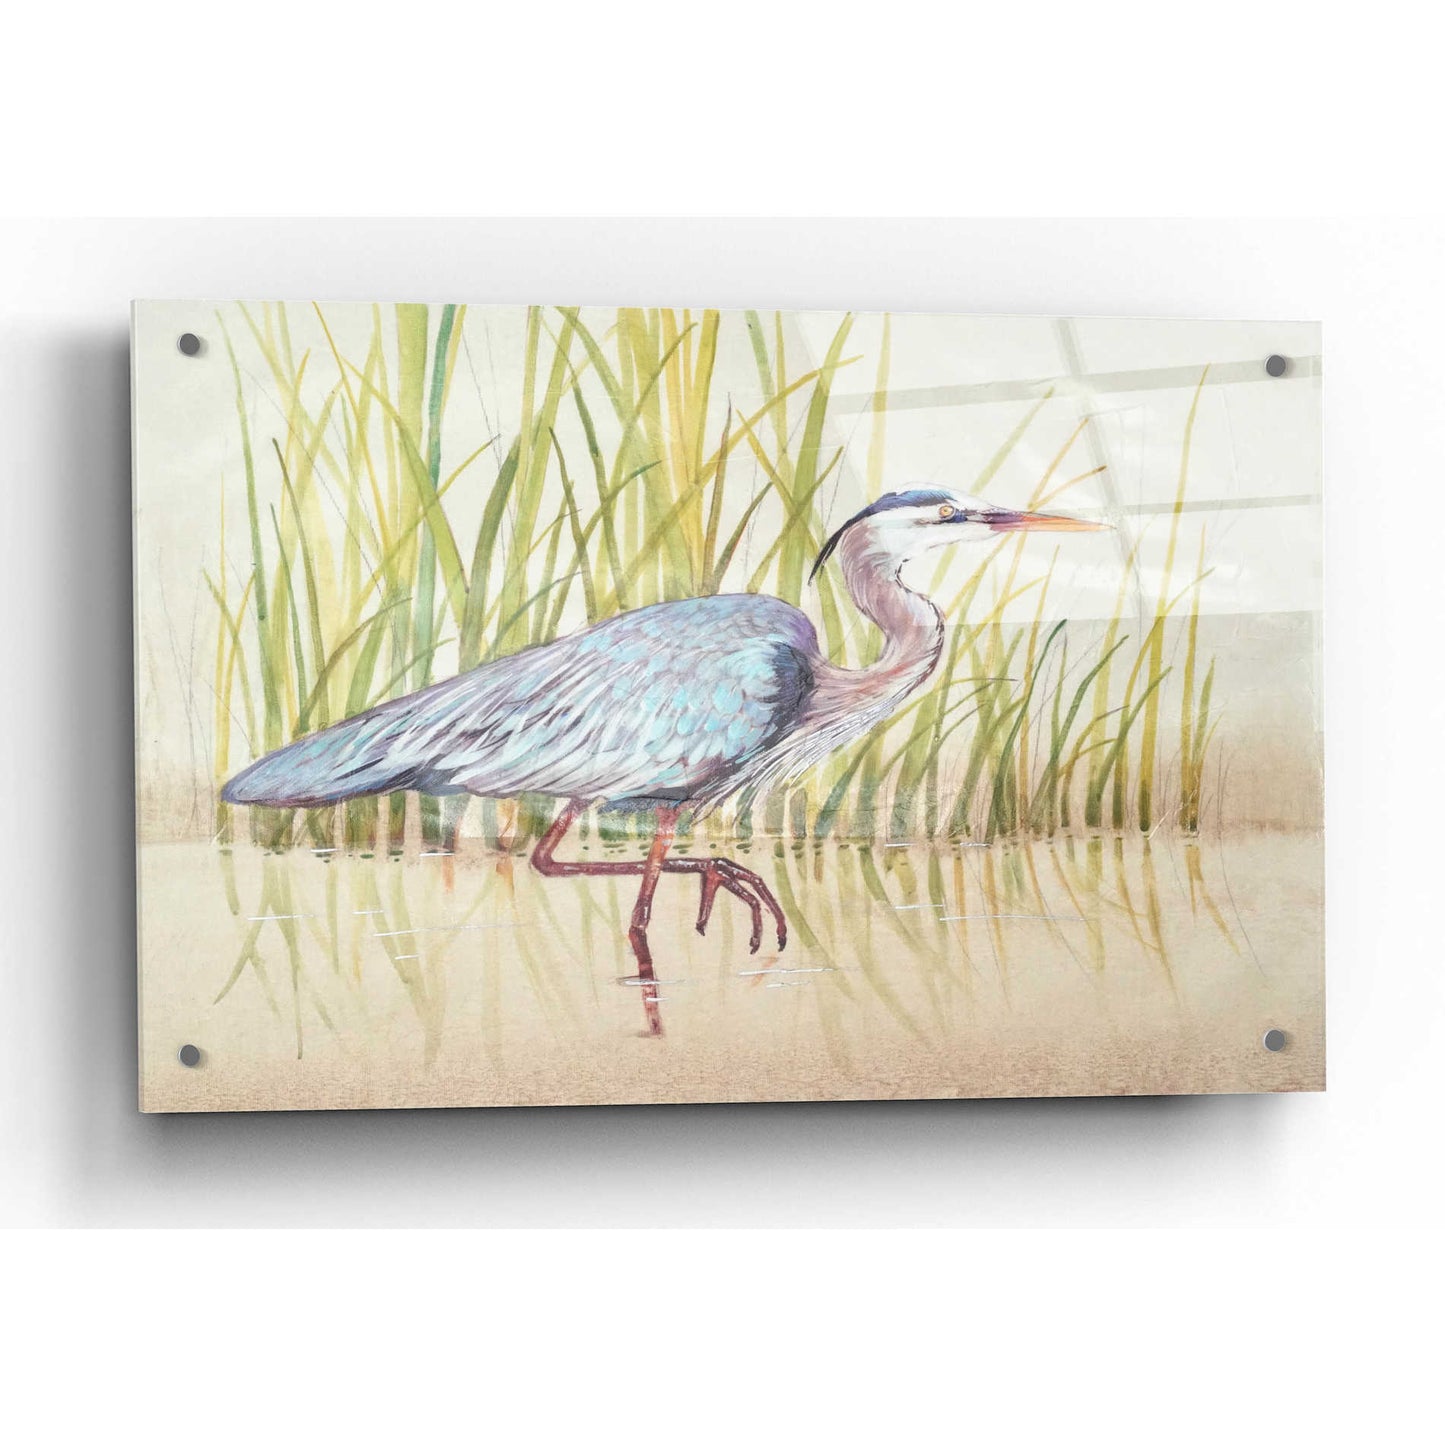 Epic Art 'Heron & Reeds I' by Tim O'Toole, Acrylic Glass Wall Art,36x24